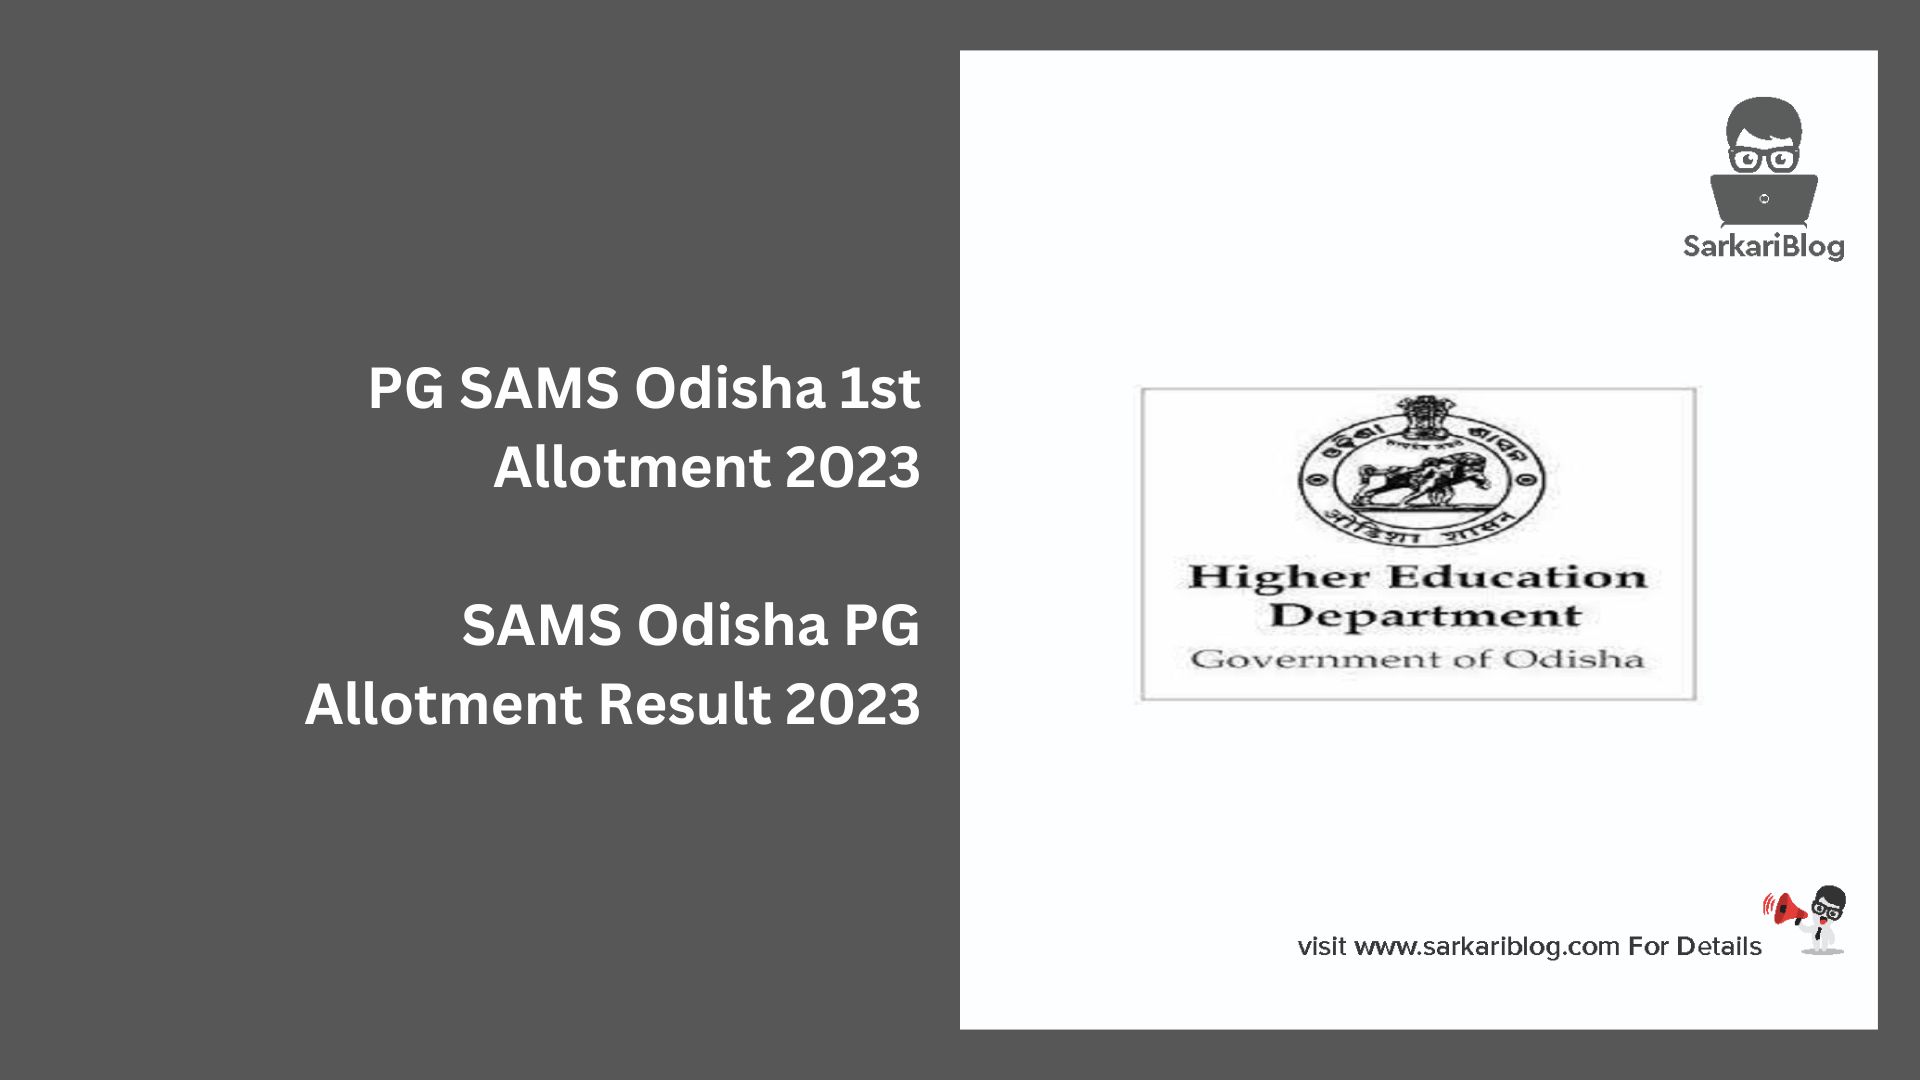 PG SAMS Odisha 1st Allotment 2023